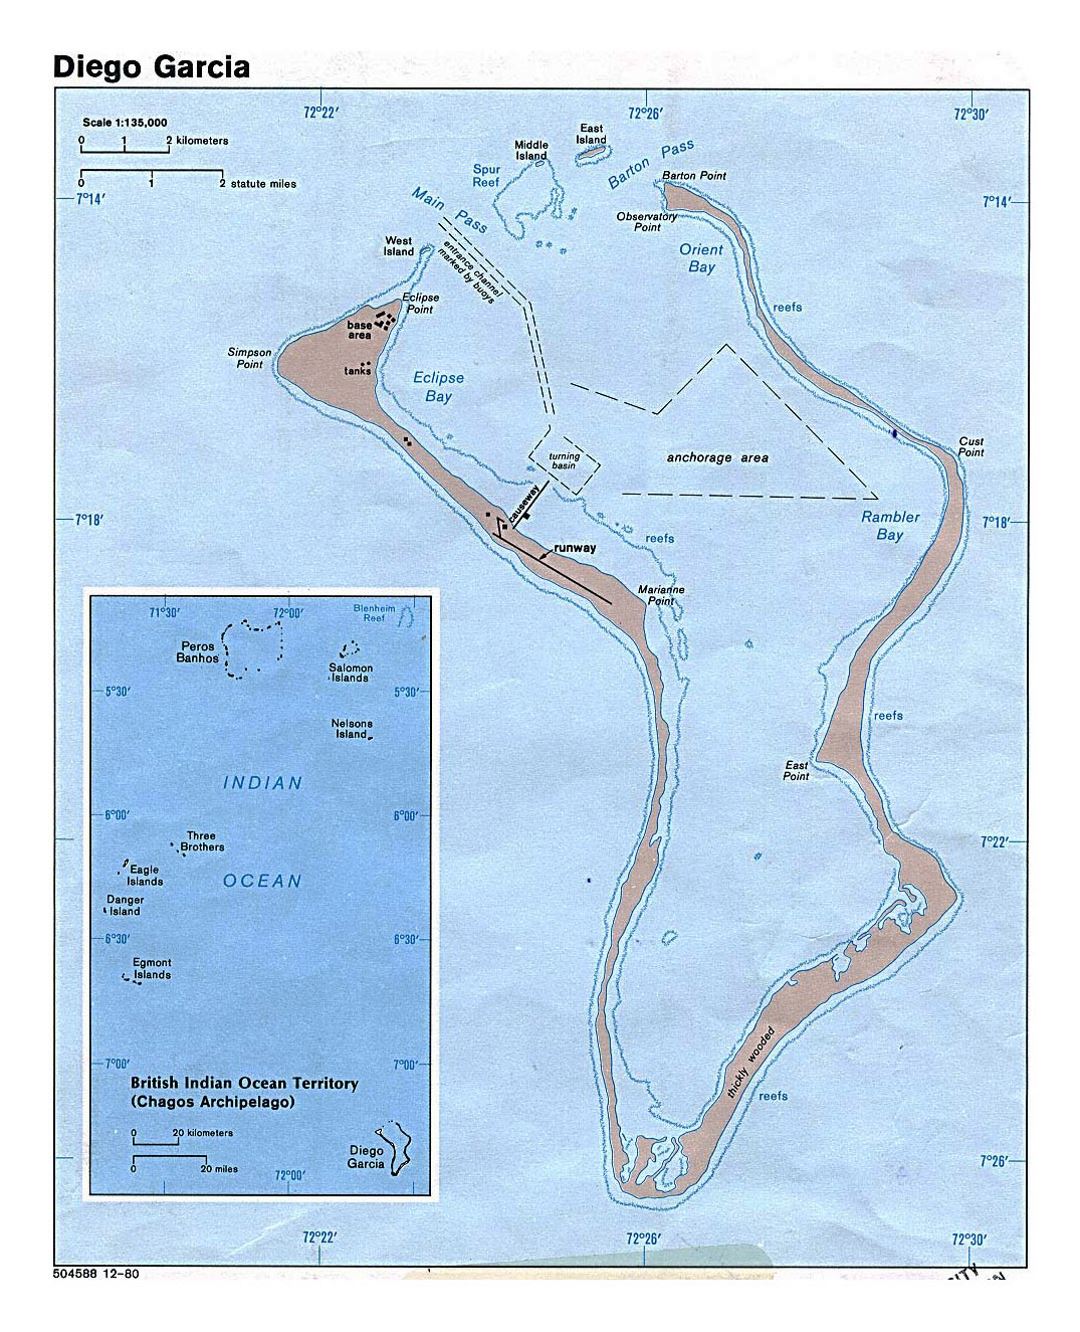 Detallado mapa de isla Diego García - 1980